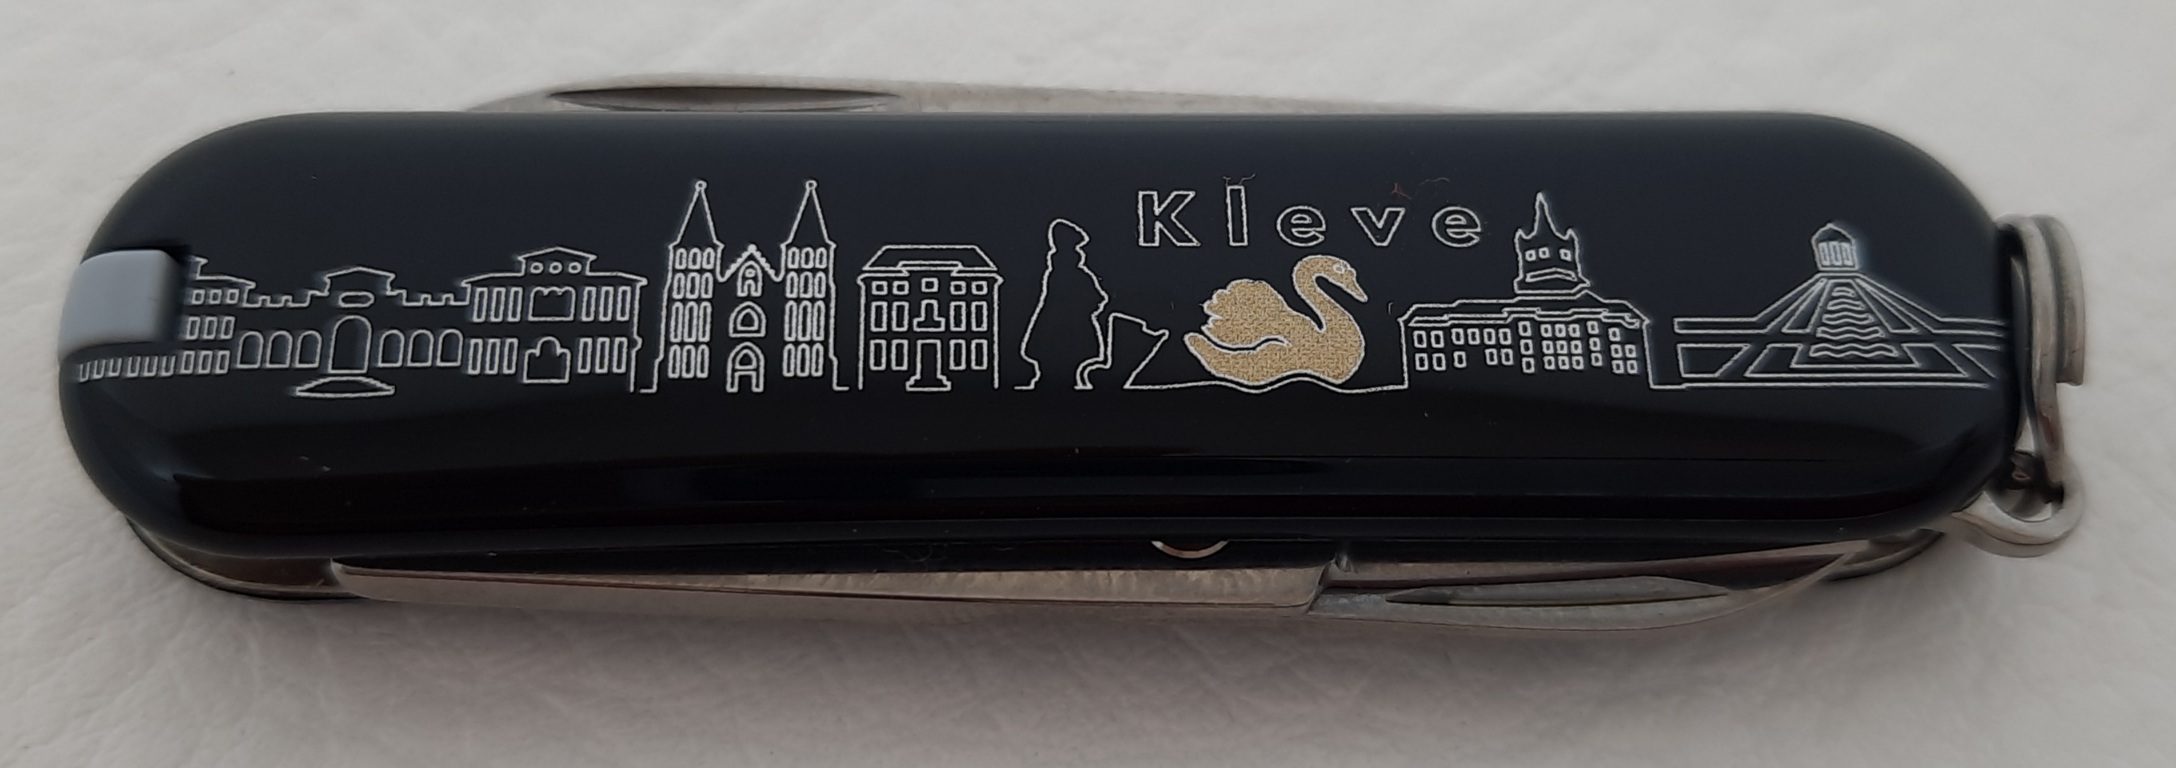 Stadtmesser Klever Taschenmesser CLASSICSD schwarz mit Klever Stadtmotiv, 7 Funktionen 